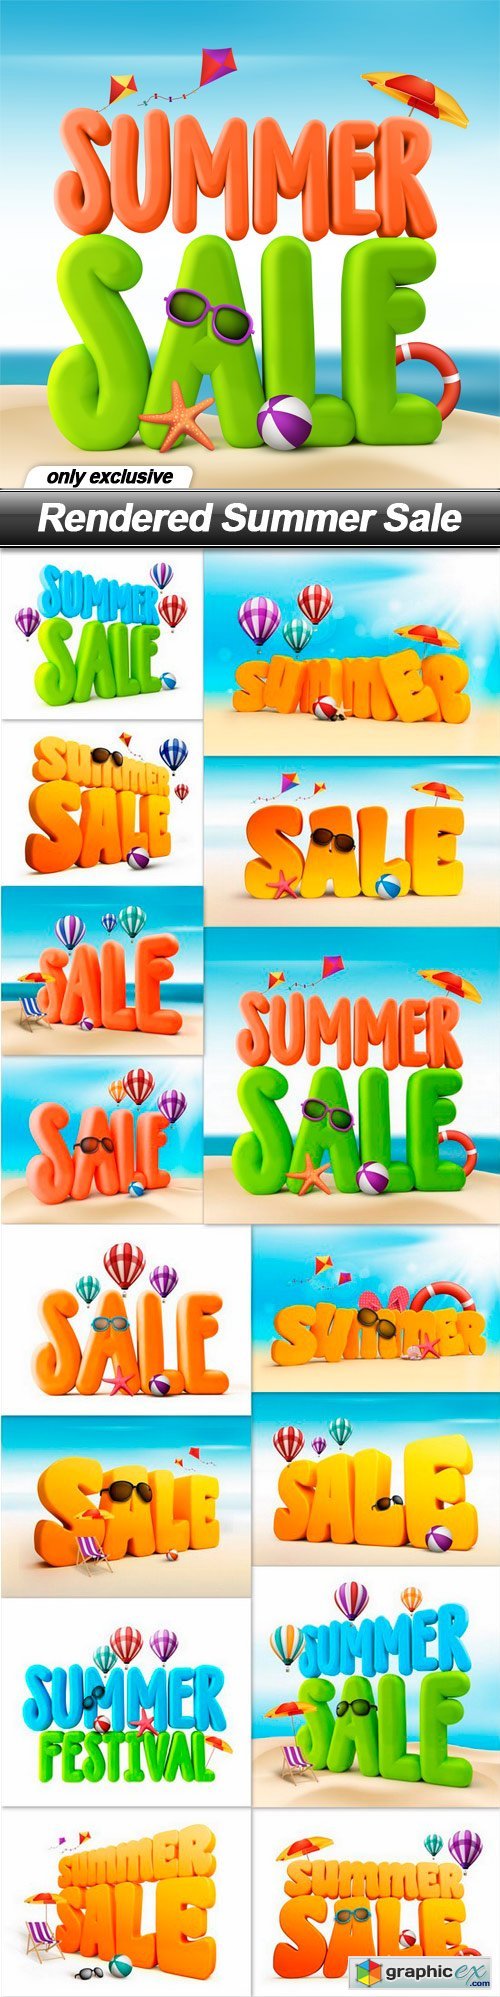 Rendered Summer Sale - 15 UHQ JPEG